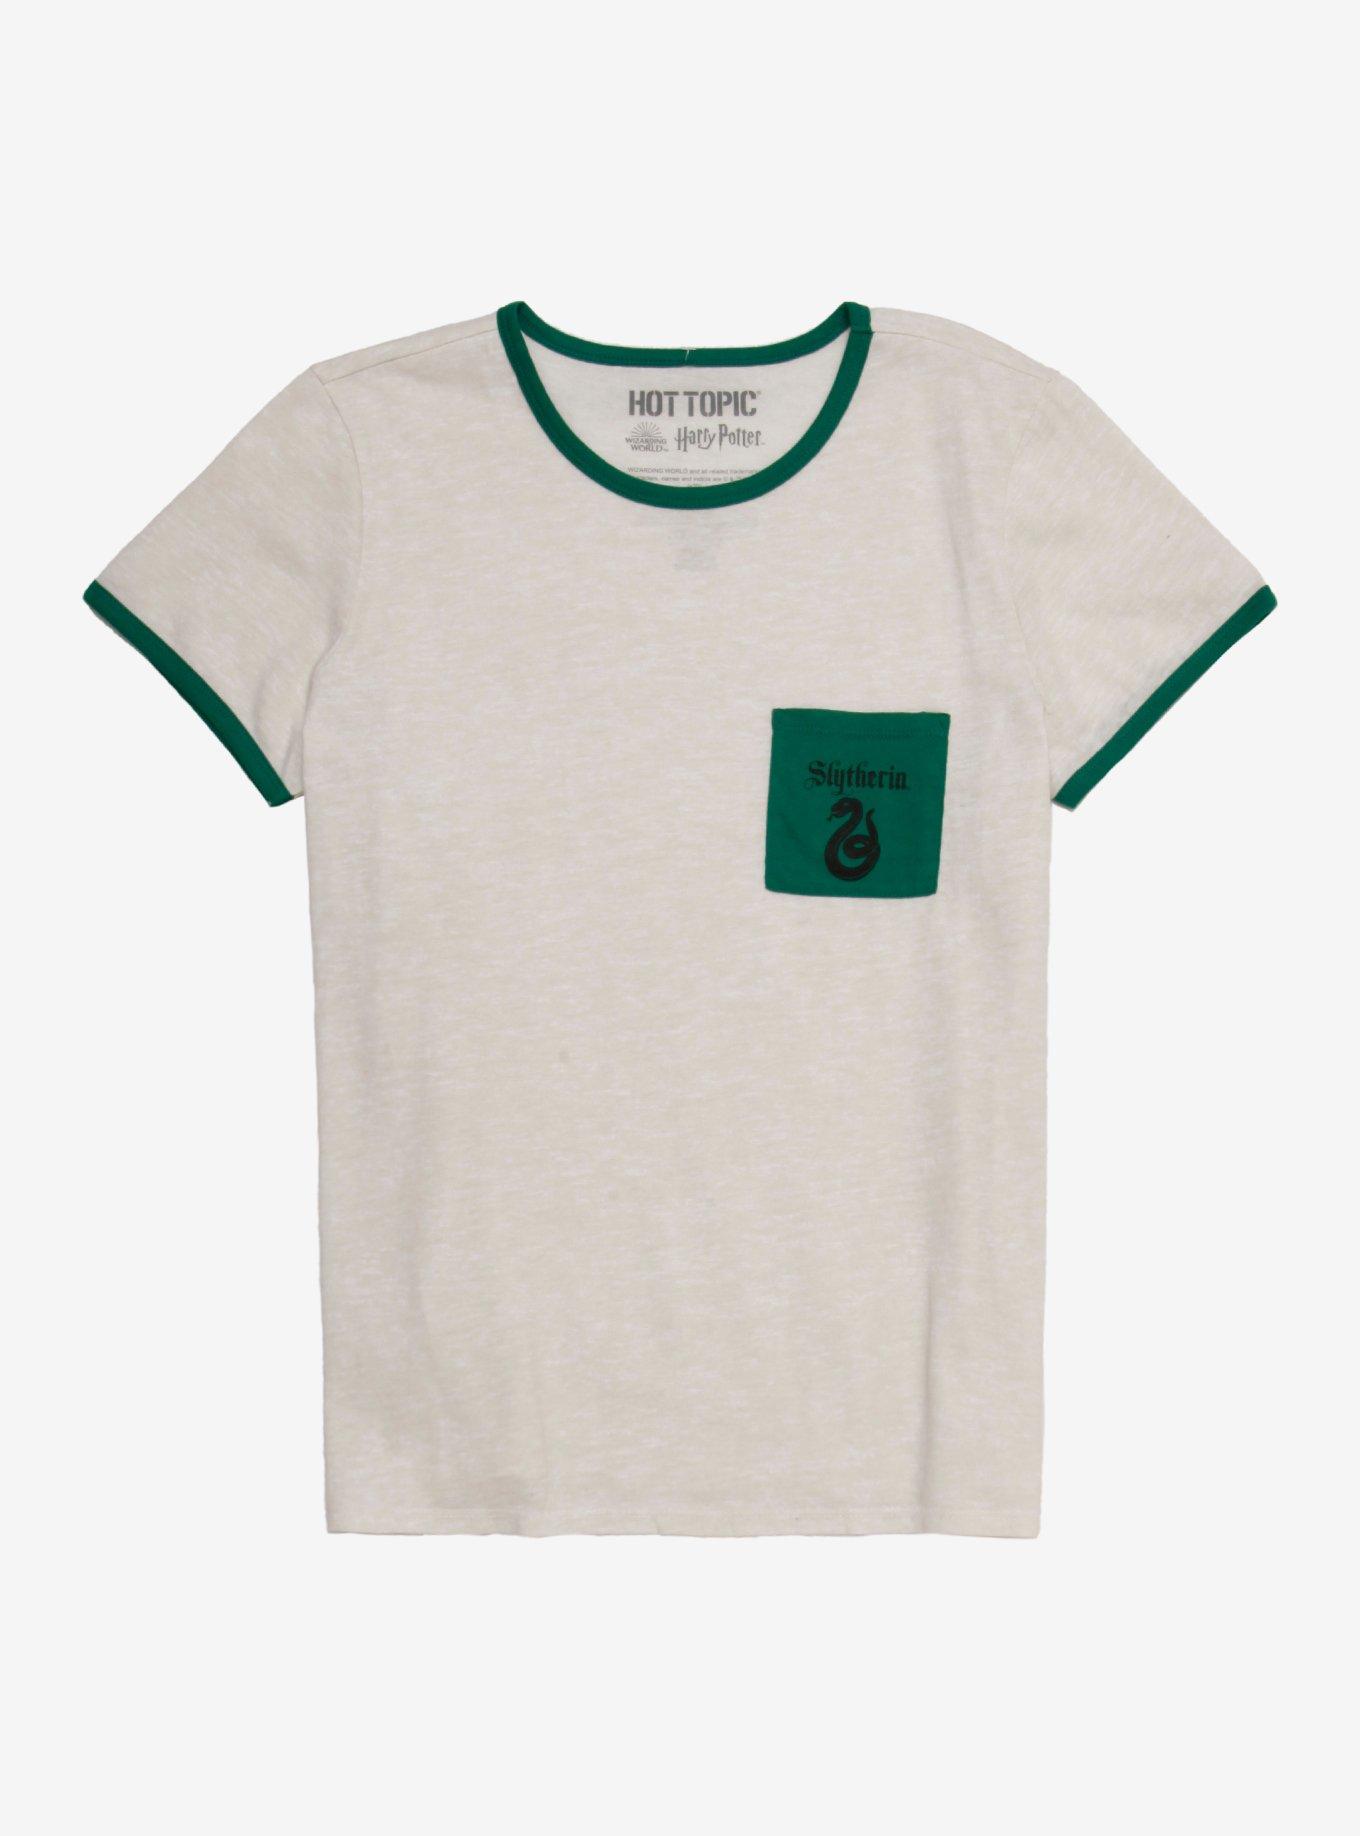 Harry Potter Slytherin Pocket Girls Ringer T-Shirt, GREEN, hi-res